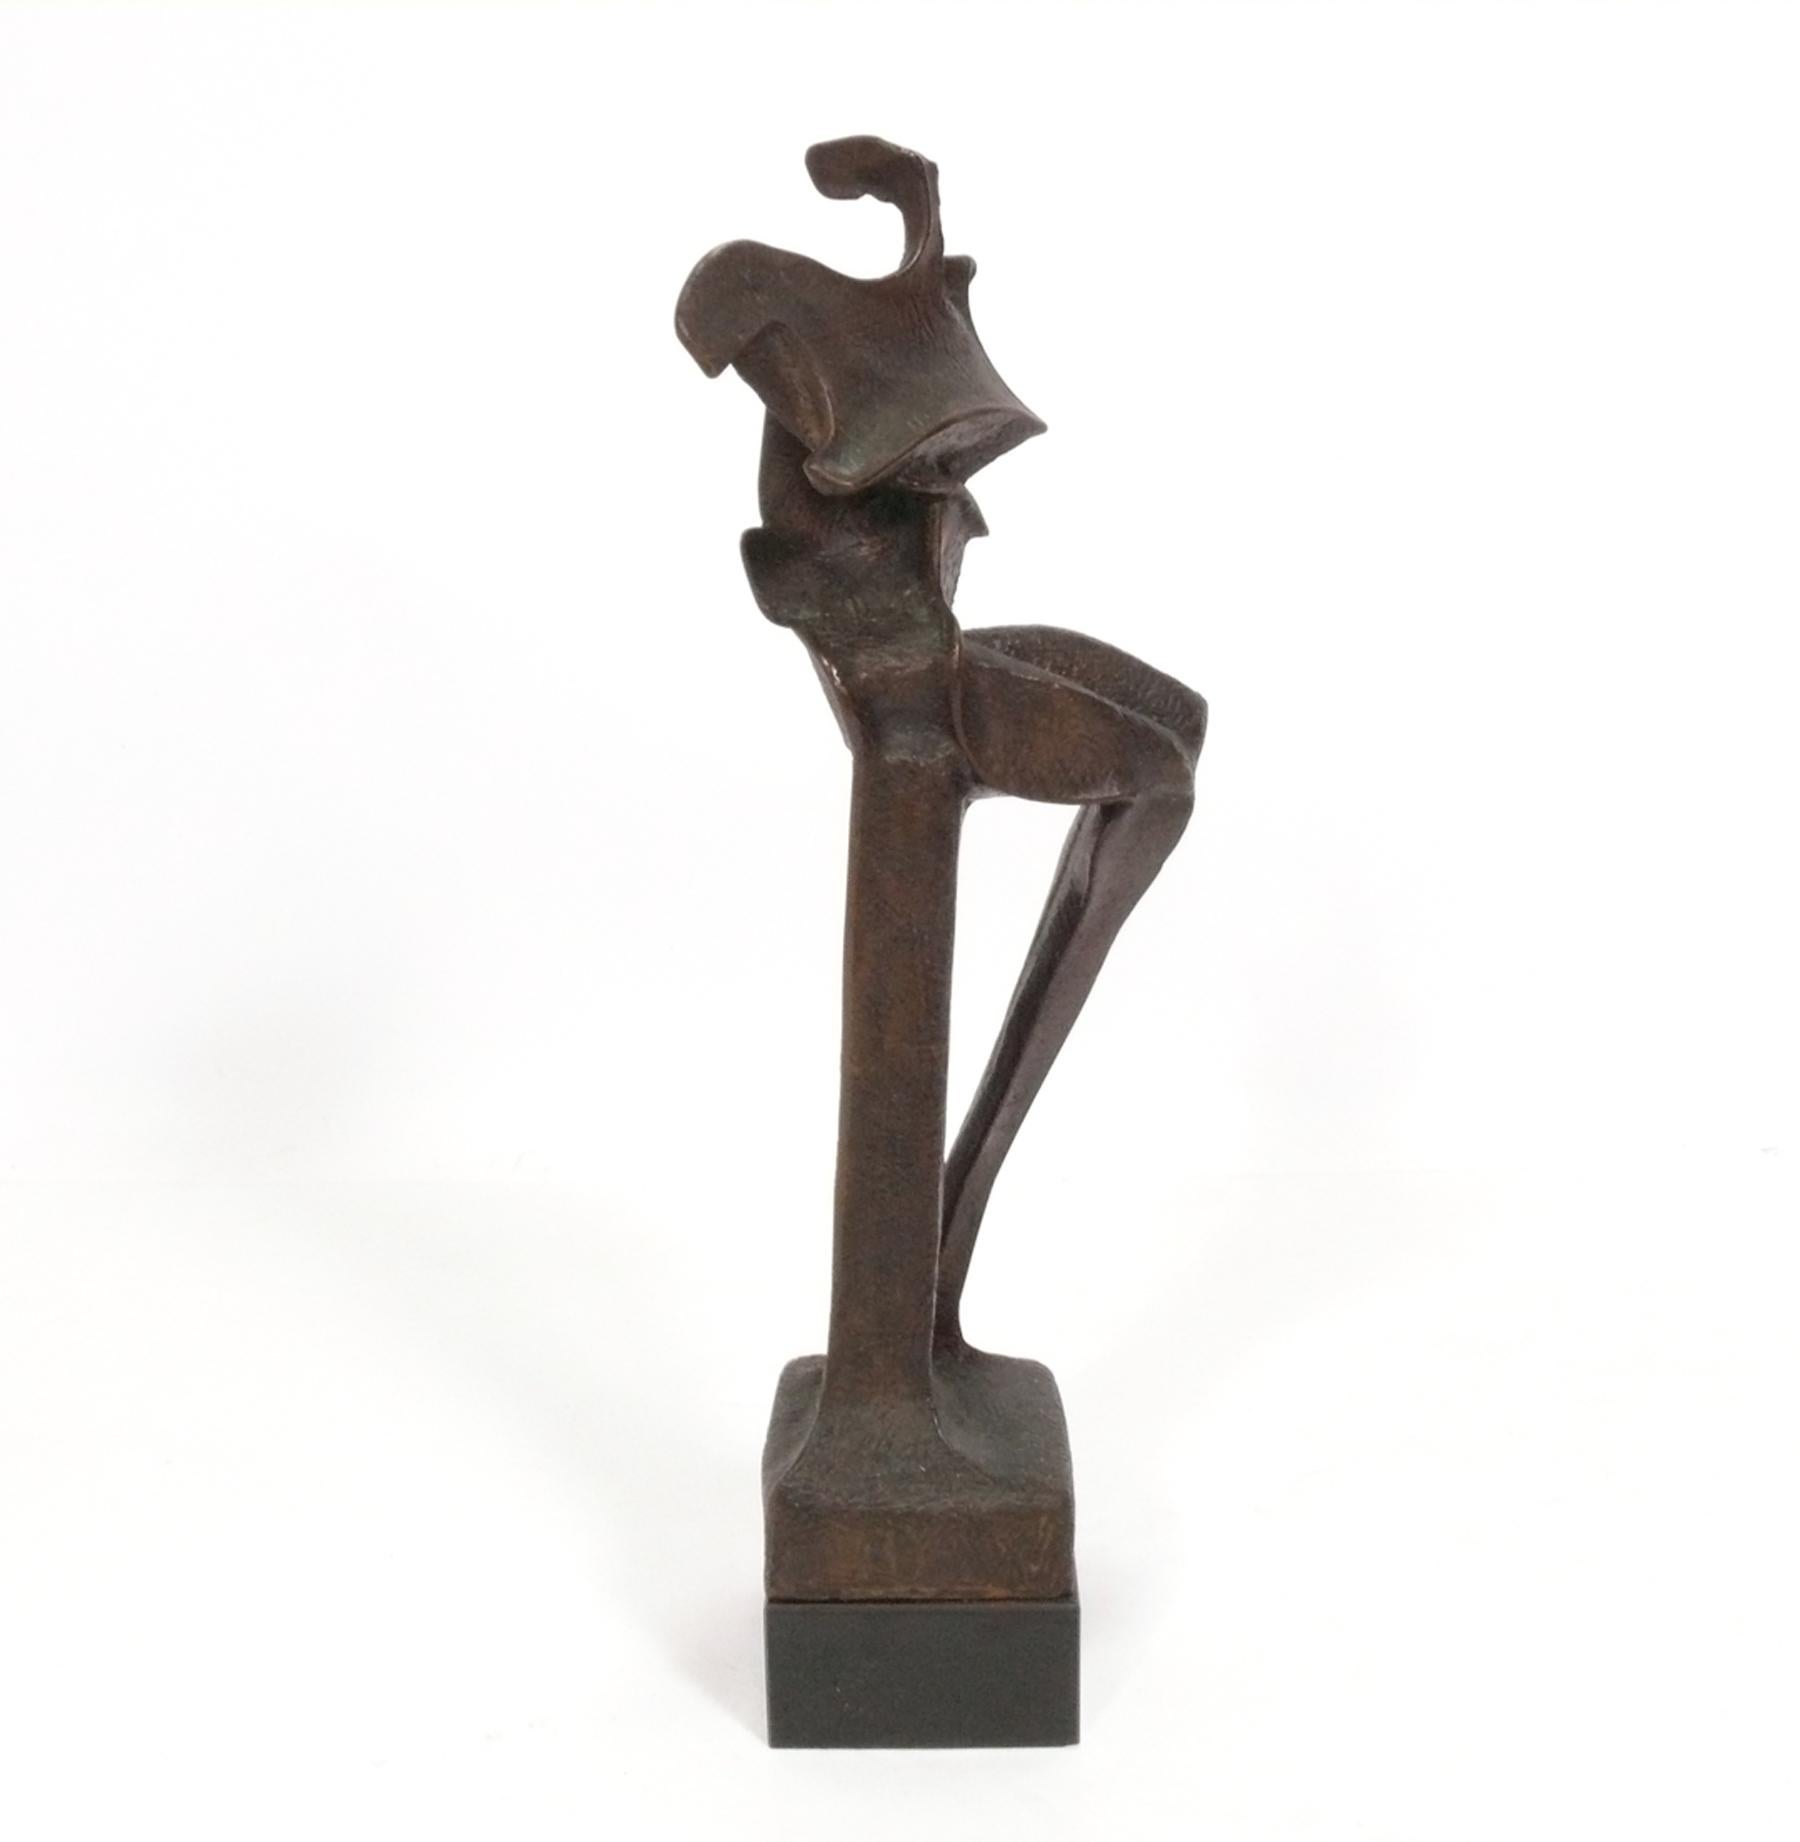 Grande sculpture abstraite en bronze de Carol Harrison, américaine, vers les années 1970. Conserve sa chaude patine d'origine. Il mesure une hauteur impressionnante de 18 pouces.

